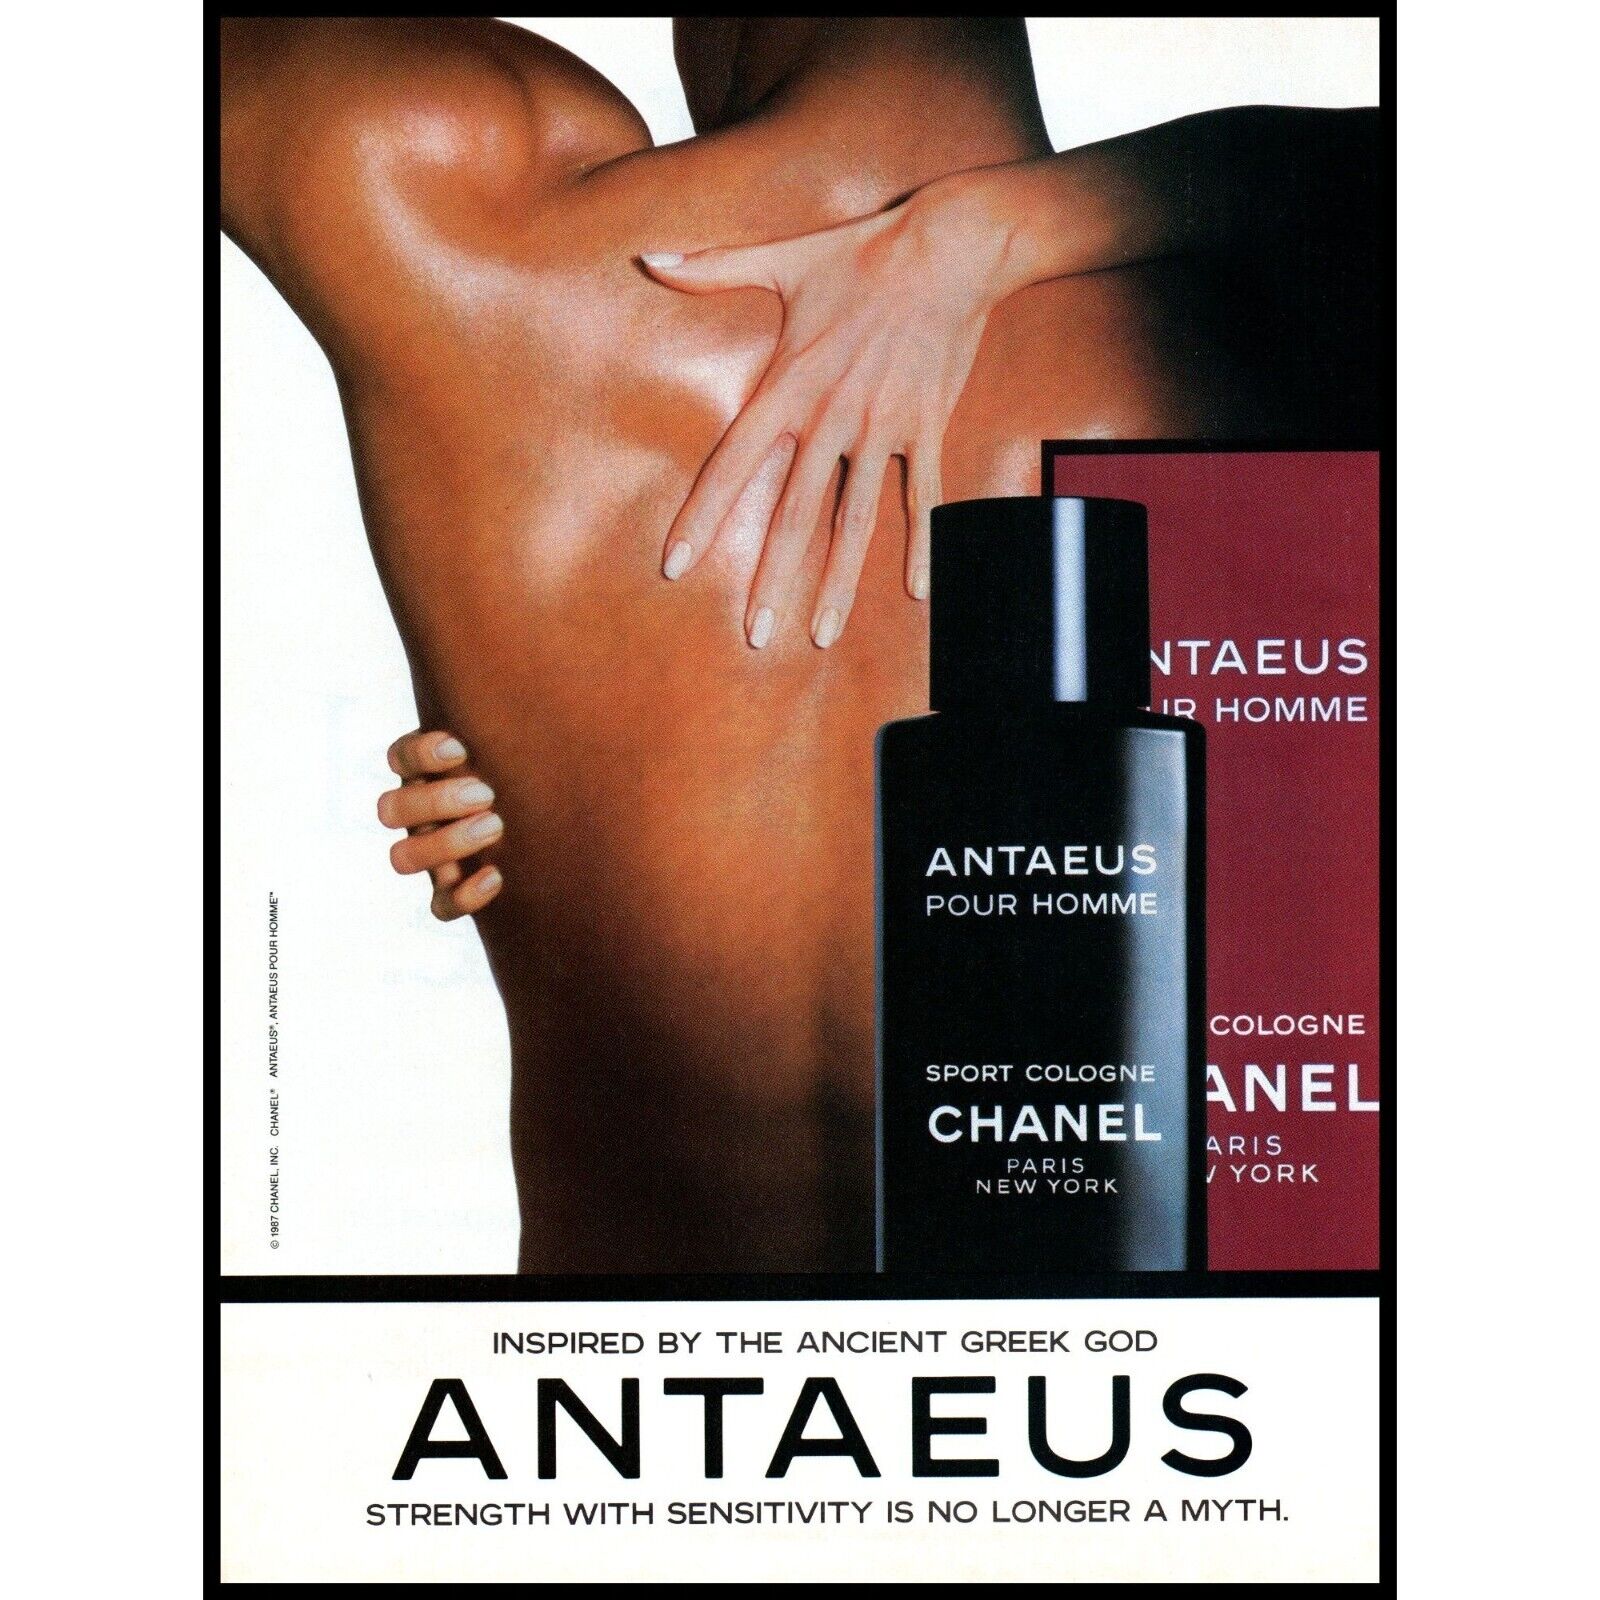 1987 Chanel Antaeus Mens Sport Cologne Vintage Print Ad Fingernails Naked Back